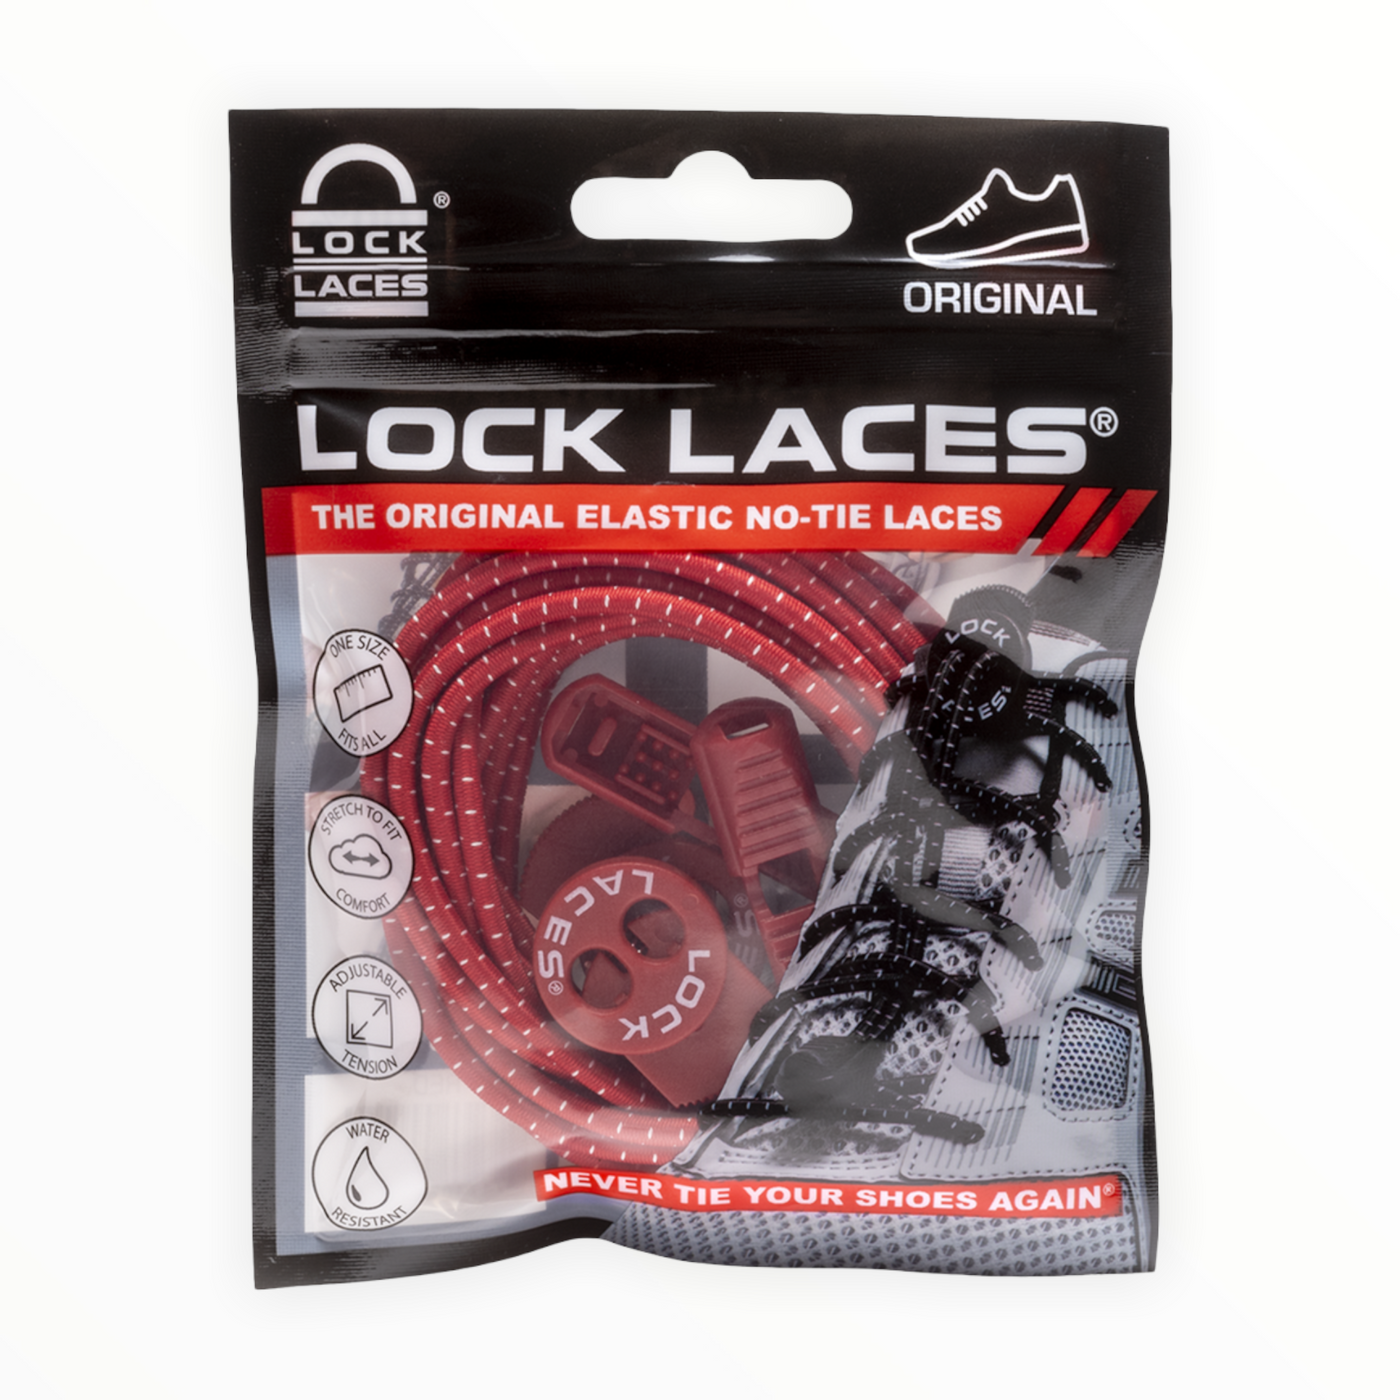 Original Lock Laces®